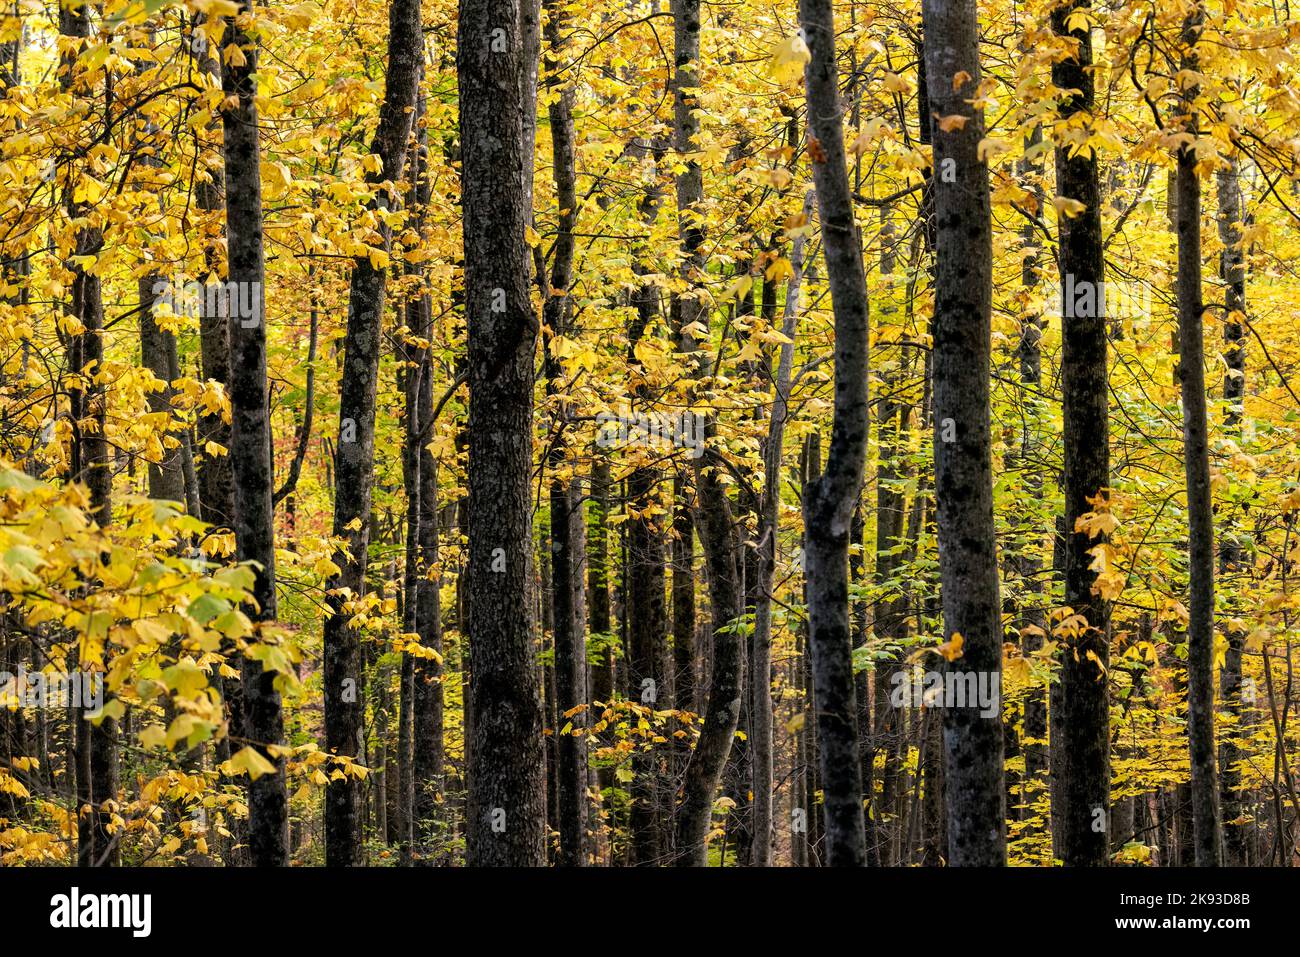 Couleur d'automne vibrante dans la forêt - Forêt nationale de Pisgah - près de Brevard, Caroline du Nord Etats-Unis Banque D'Images